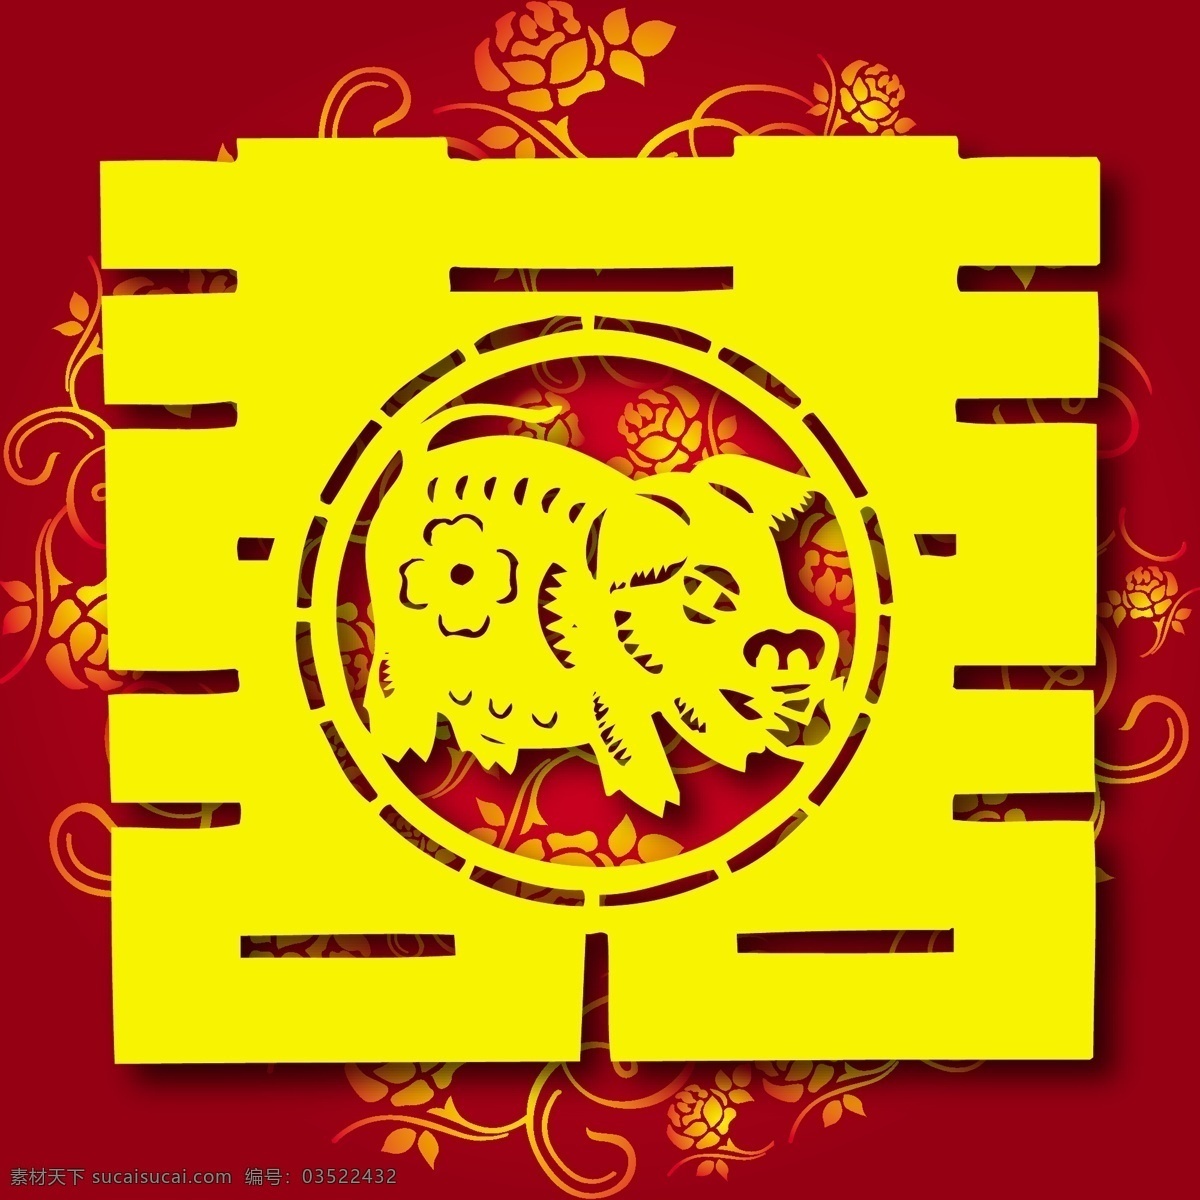 生肖 猪 传统剪纸 十二生肖 剪纸红双喜 双囍 生肖猪 节日素材 其他节日